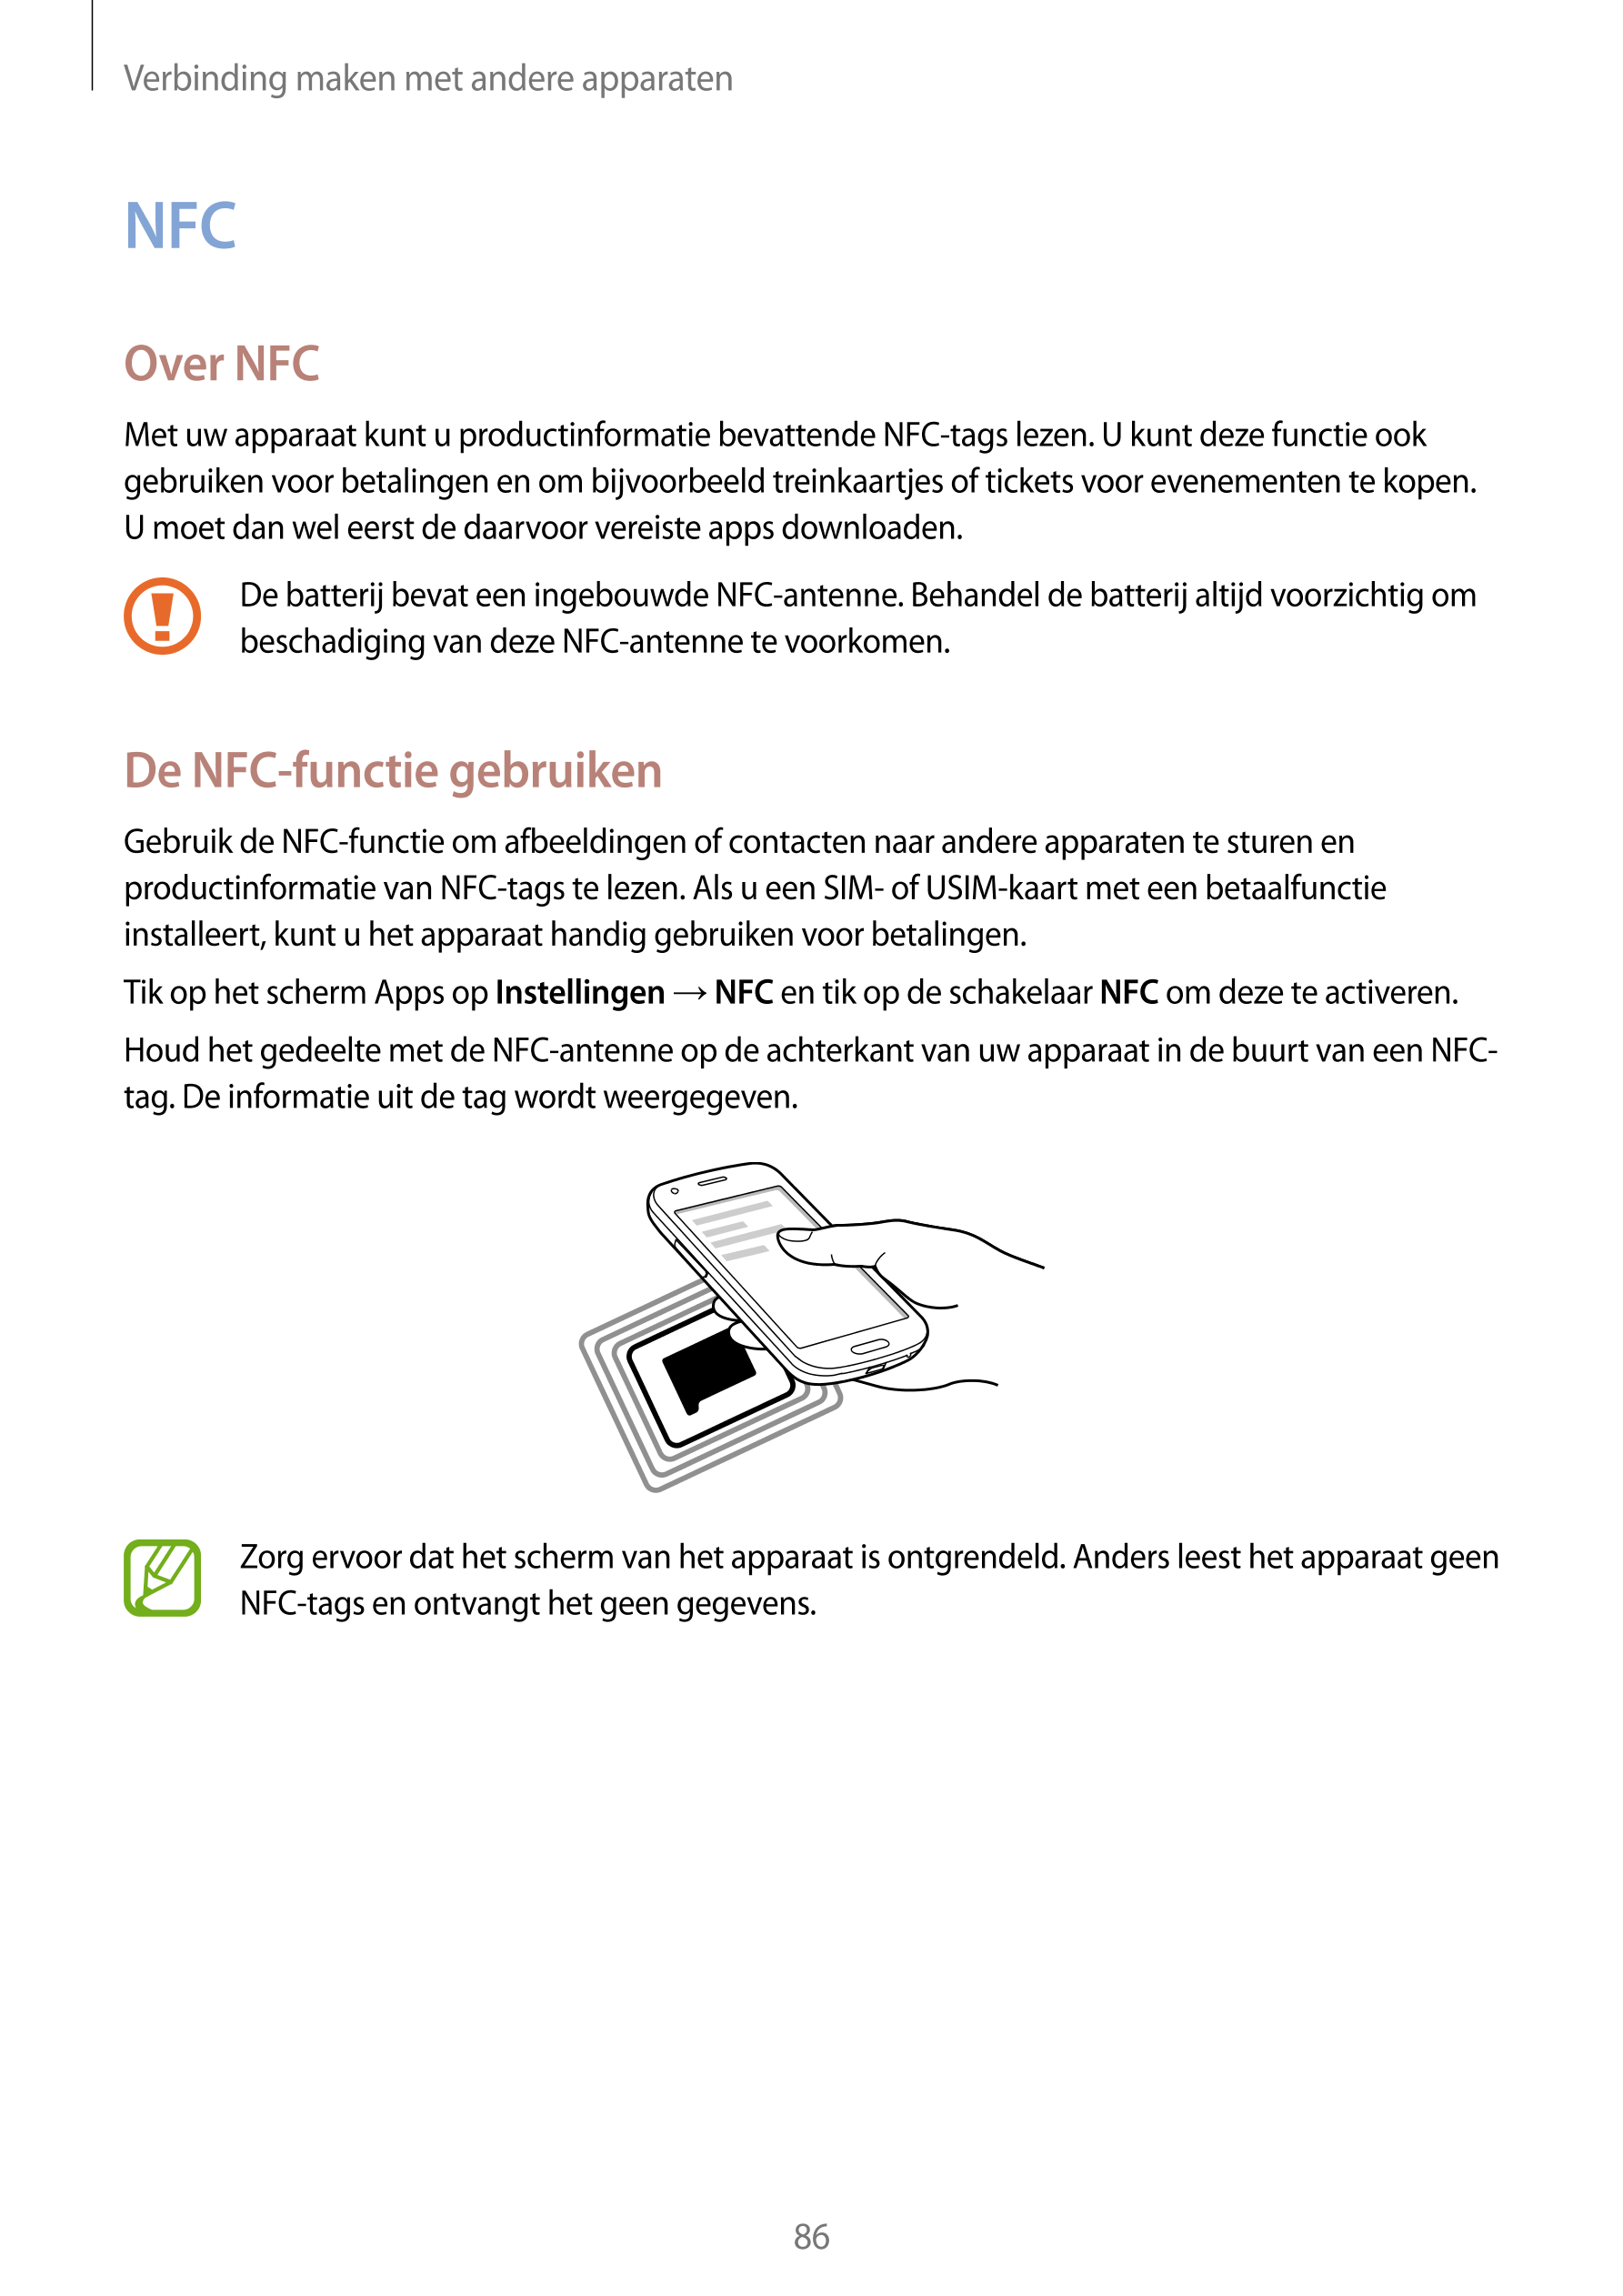 Verbinding maken met andere apparaten
NFC
Over NFC
Met uw apparaat kunt u productinformatie bevattende NFC-tags lezen. U kunt de